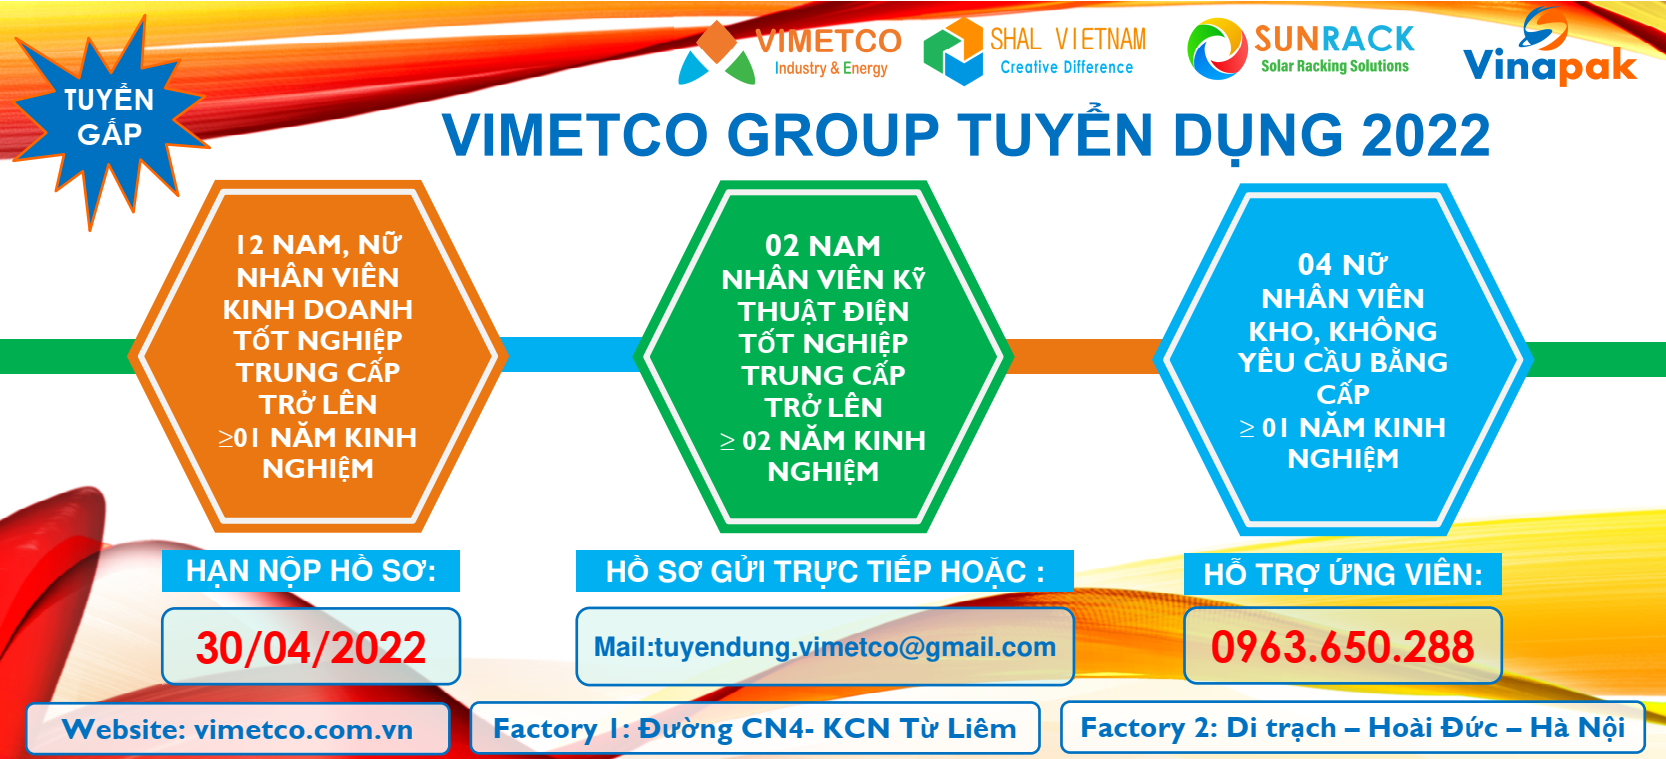 BẢN TIN TUYỂN DỤNG QUÝ I NĂM 2022 - VIMETCO GROUP